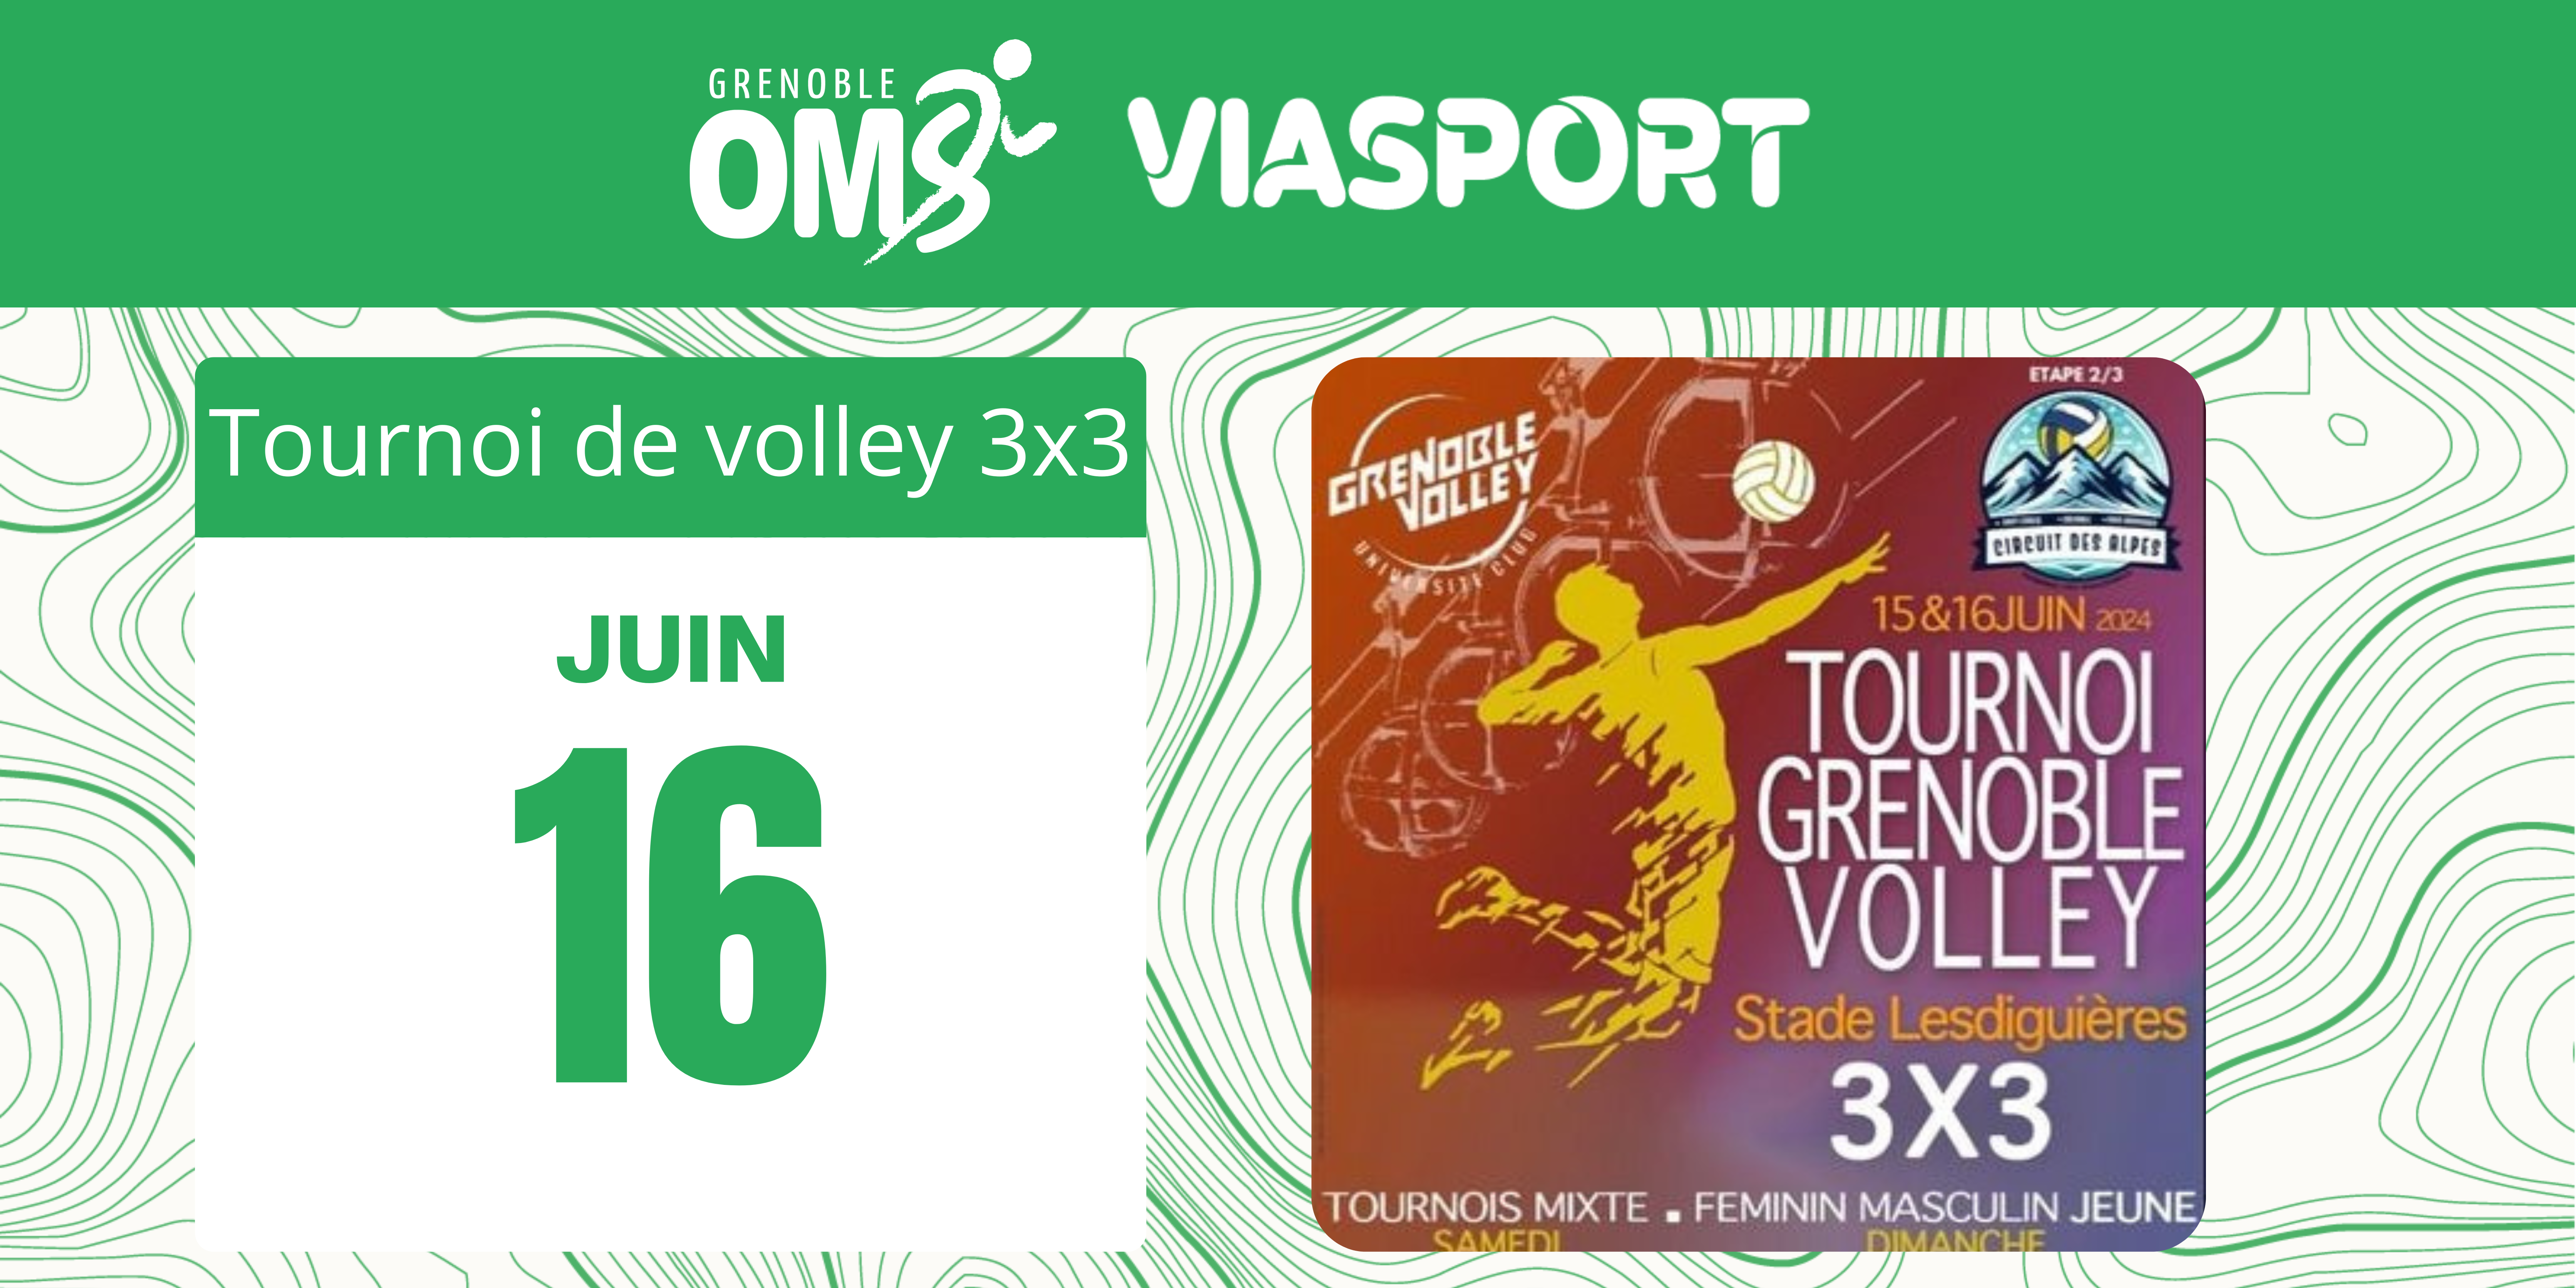 Tournoi de volley sur herbe 3 x 3 les 15 et 16 juins 2024 dans le cadre de Viasport 2024